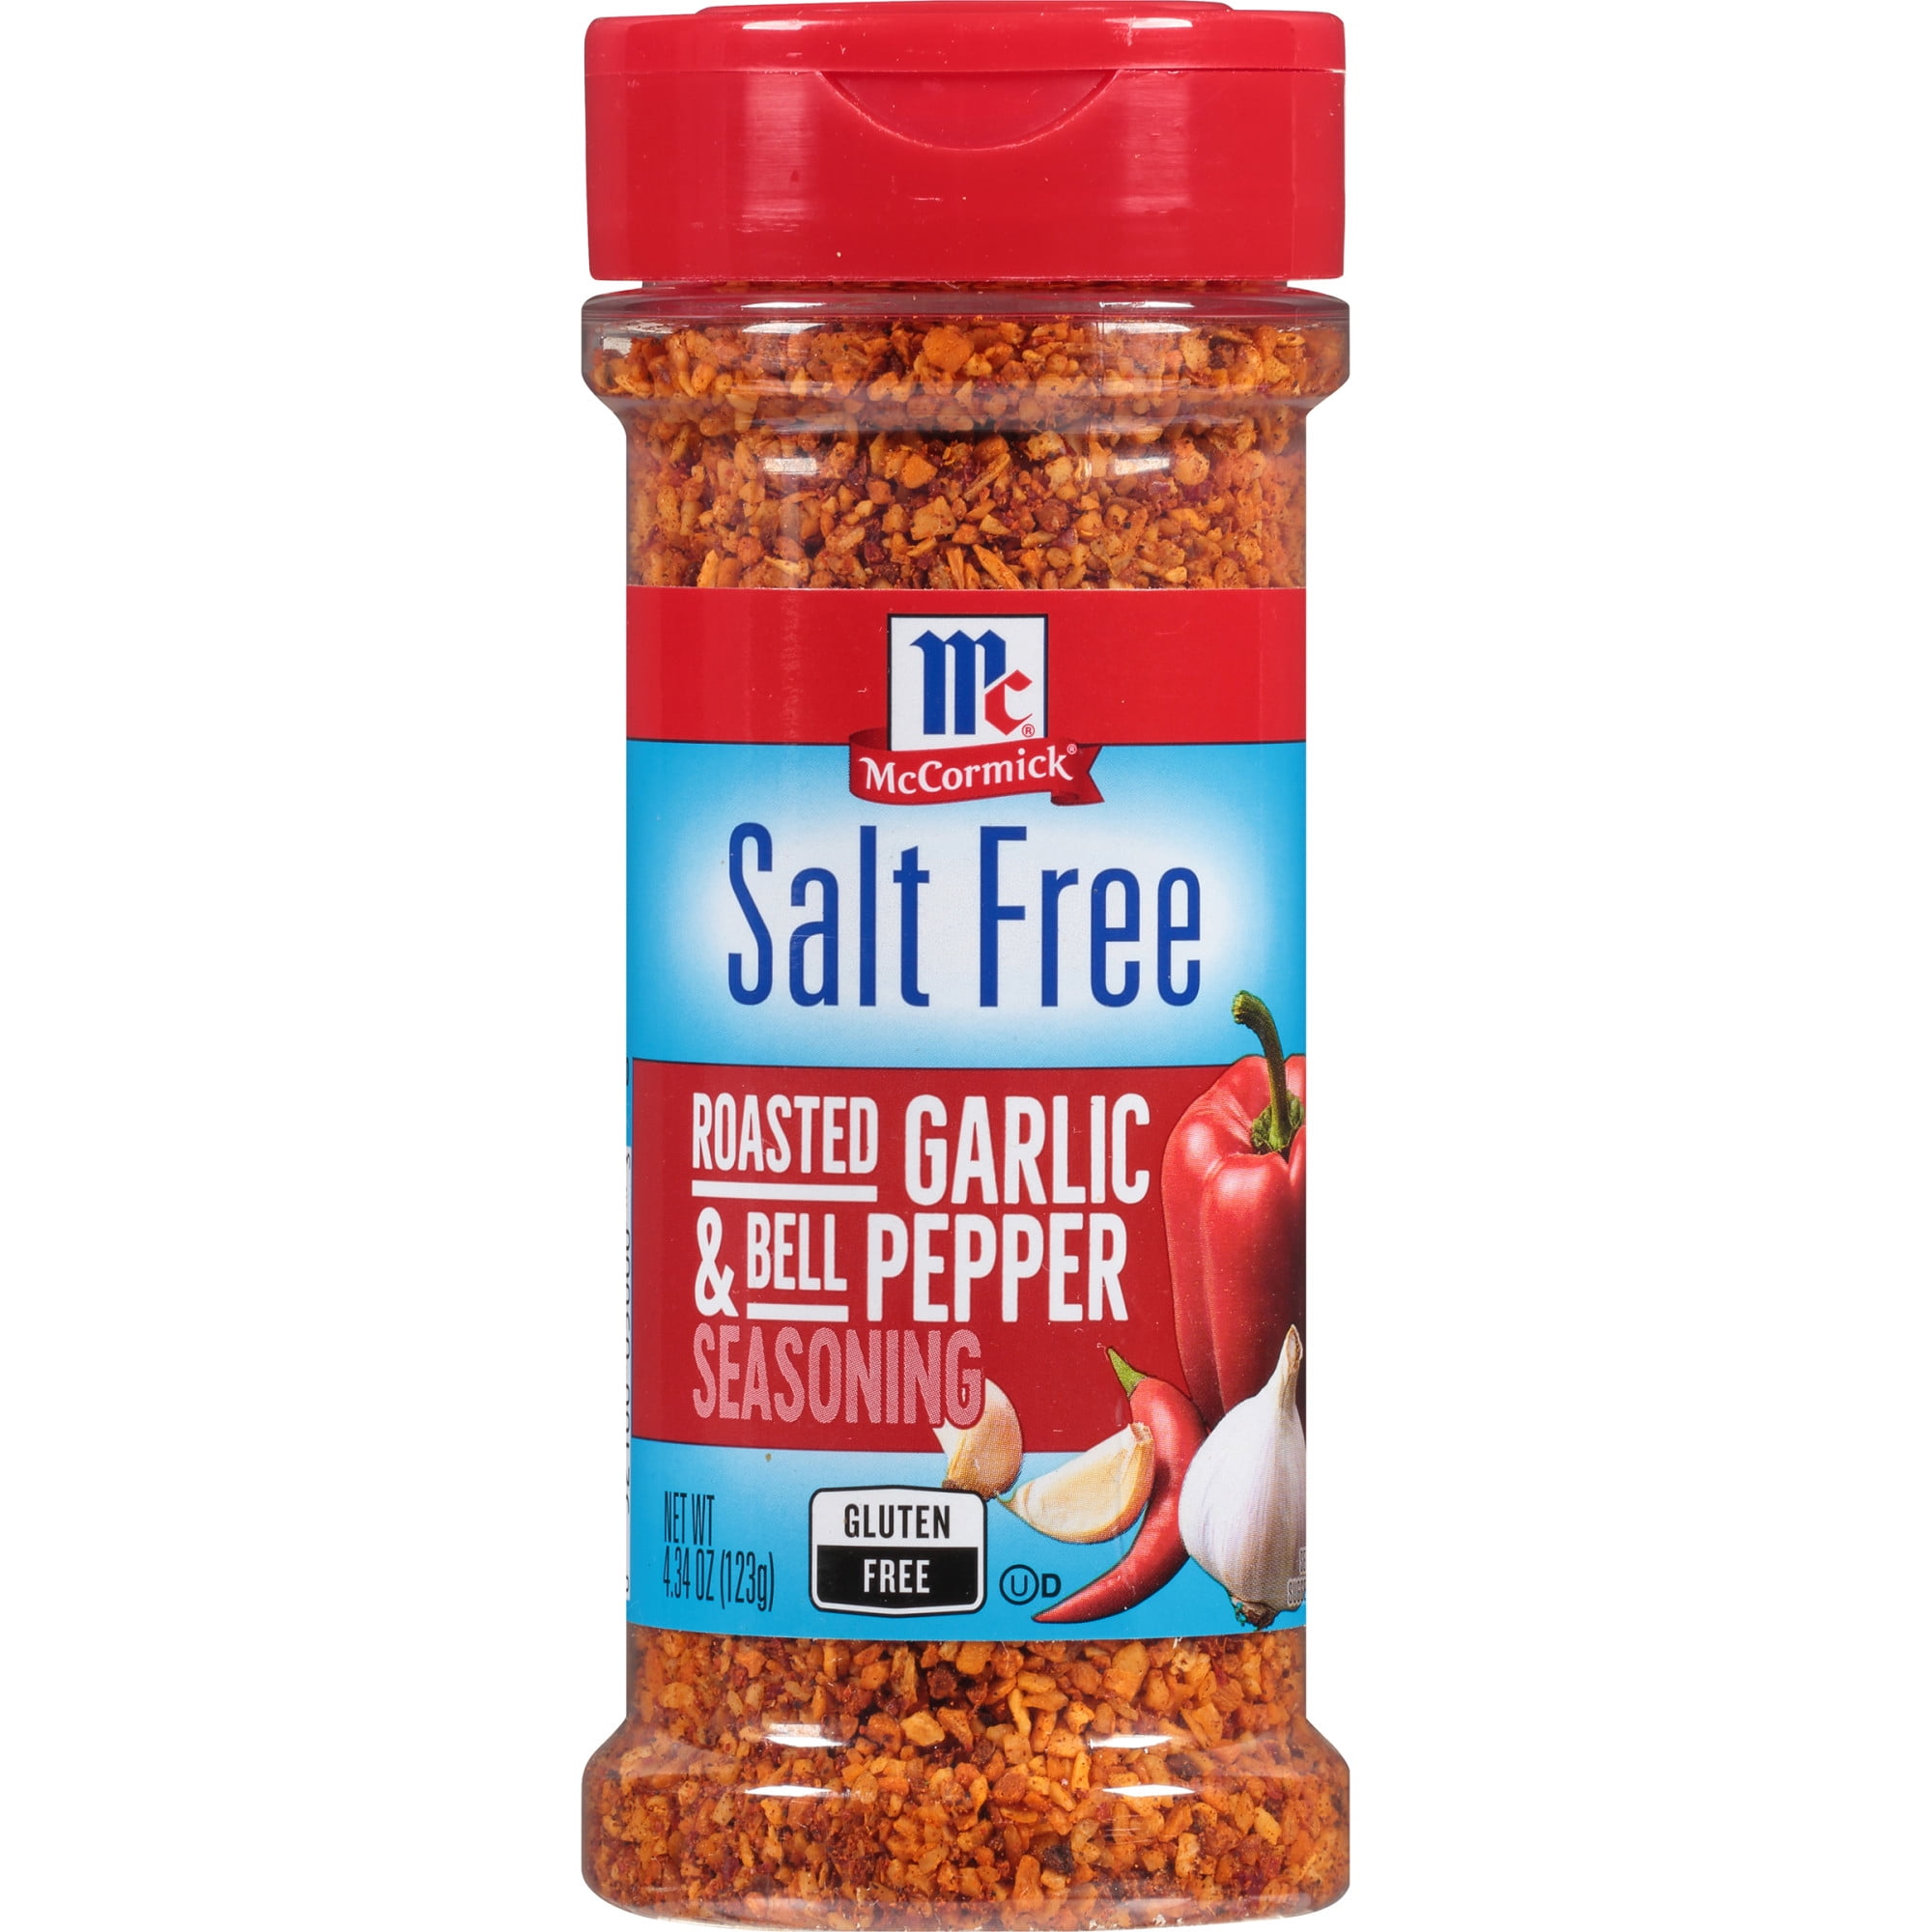 No Salt Seasonings Bundle – MFER Seasonings & Sauces